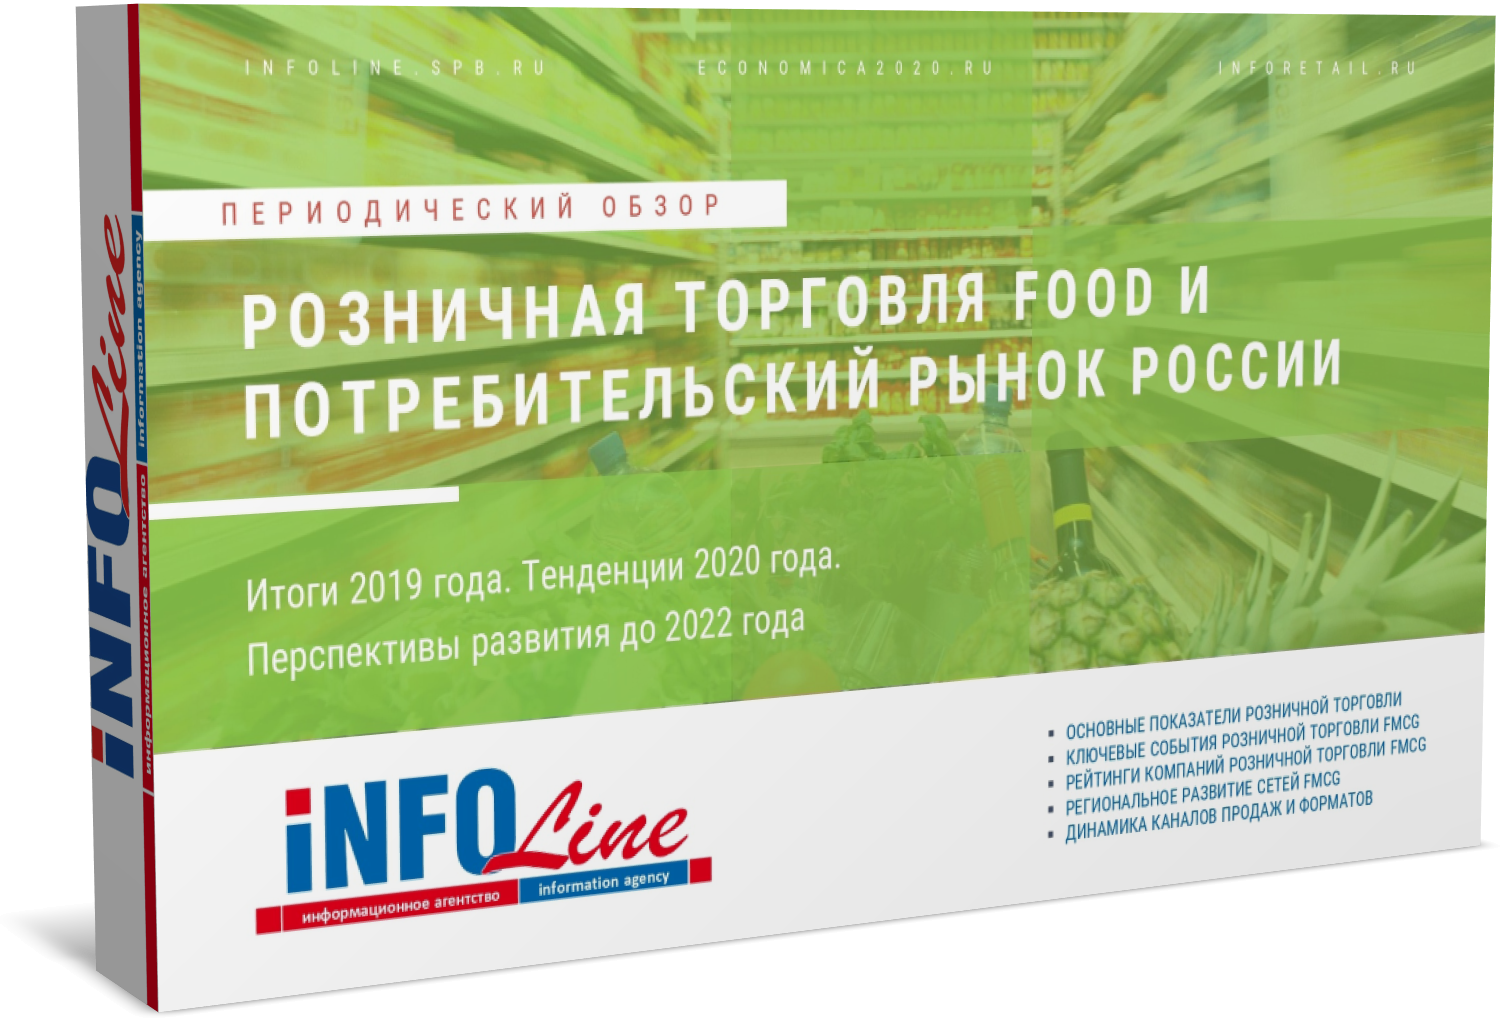 "Розничная торговля Food и потребительский рынок России 2020 года. Итоги 2019 года и перспективы развития до 2022 года" (доступна обновленная версия)